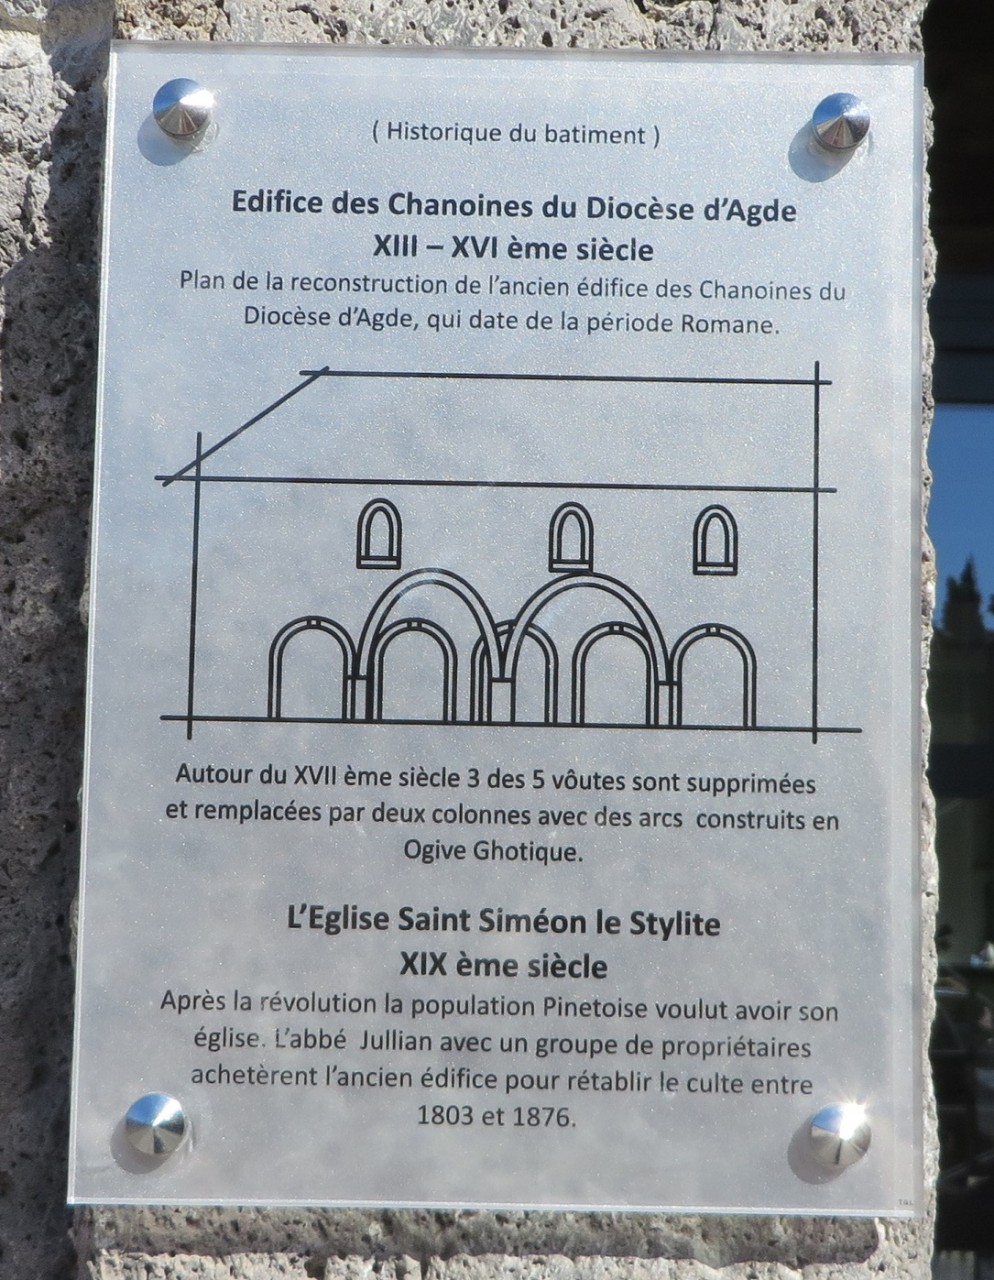 Historique du batiment
de l'ancienne Eglise de Pinet